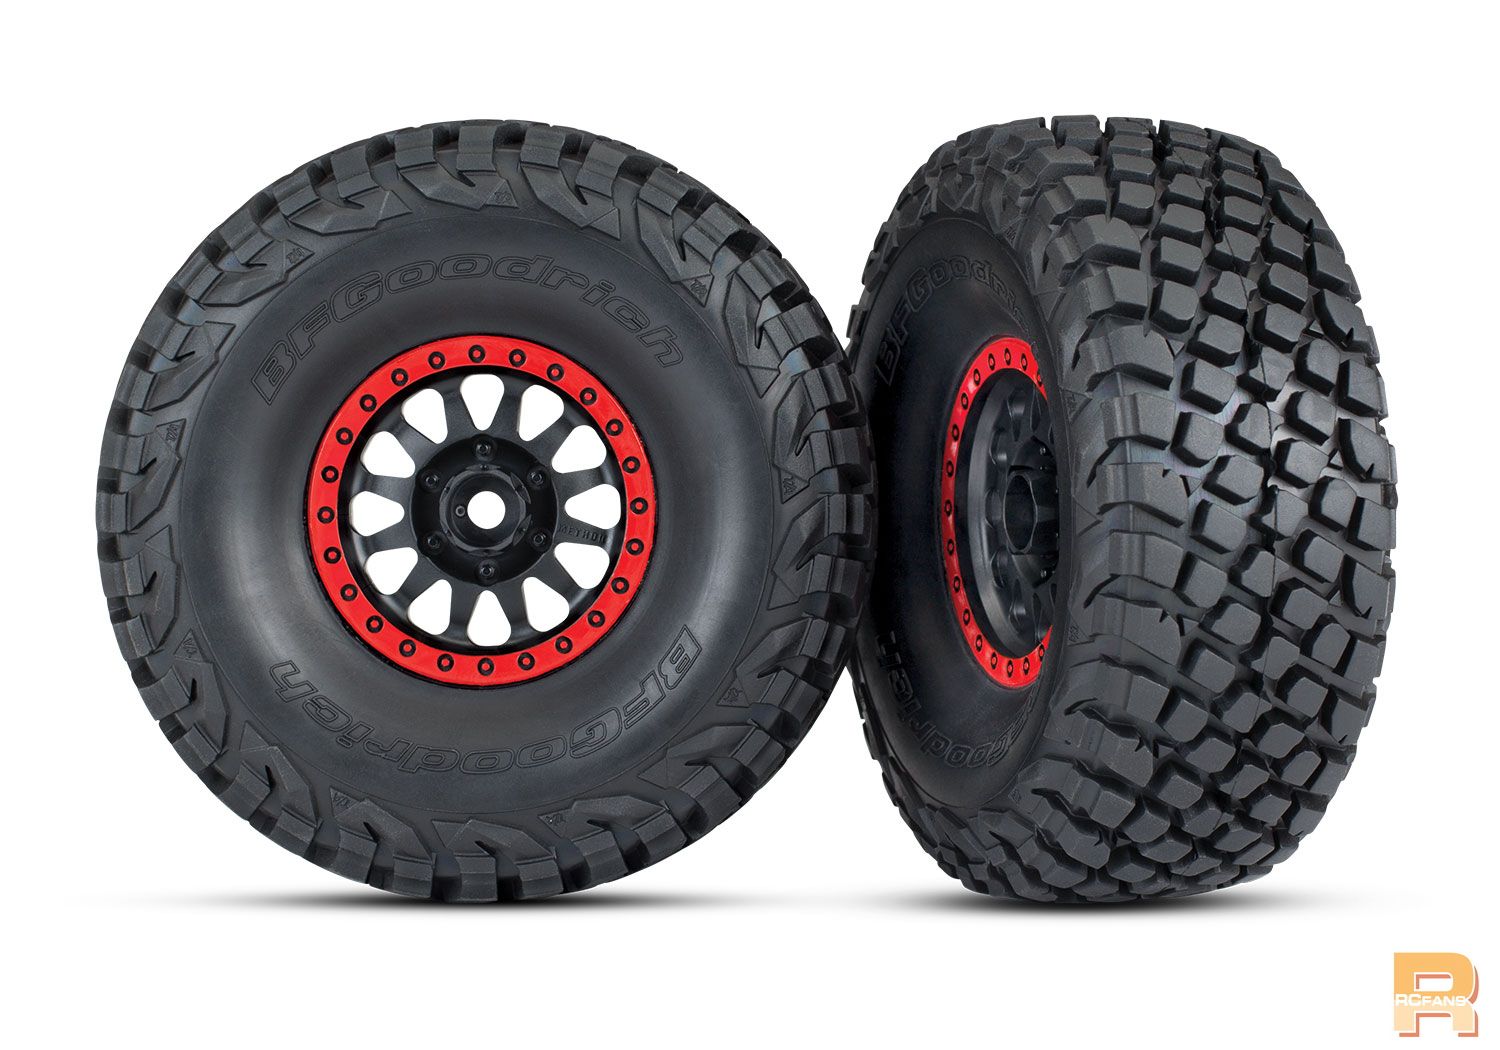 details-bfg-wheels-tires-red.jpg